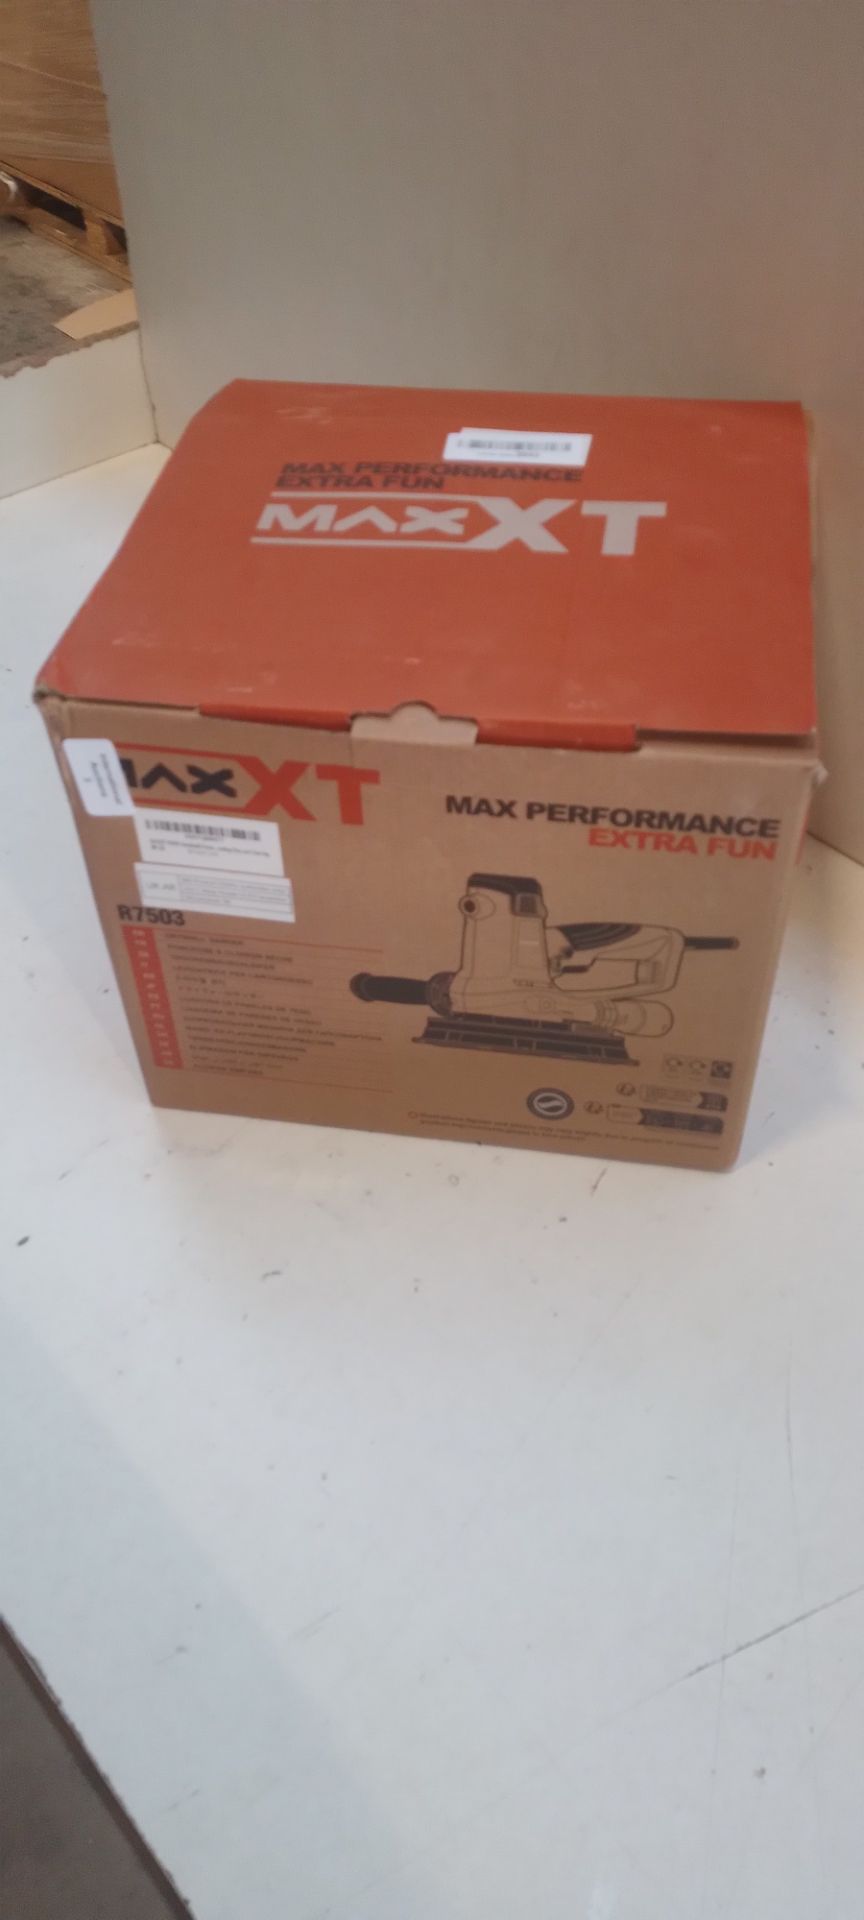 RRP £86.61 MAXXT 810W Handheld Drywall Sander - Image 2 of 2